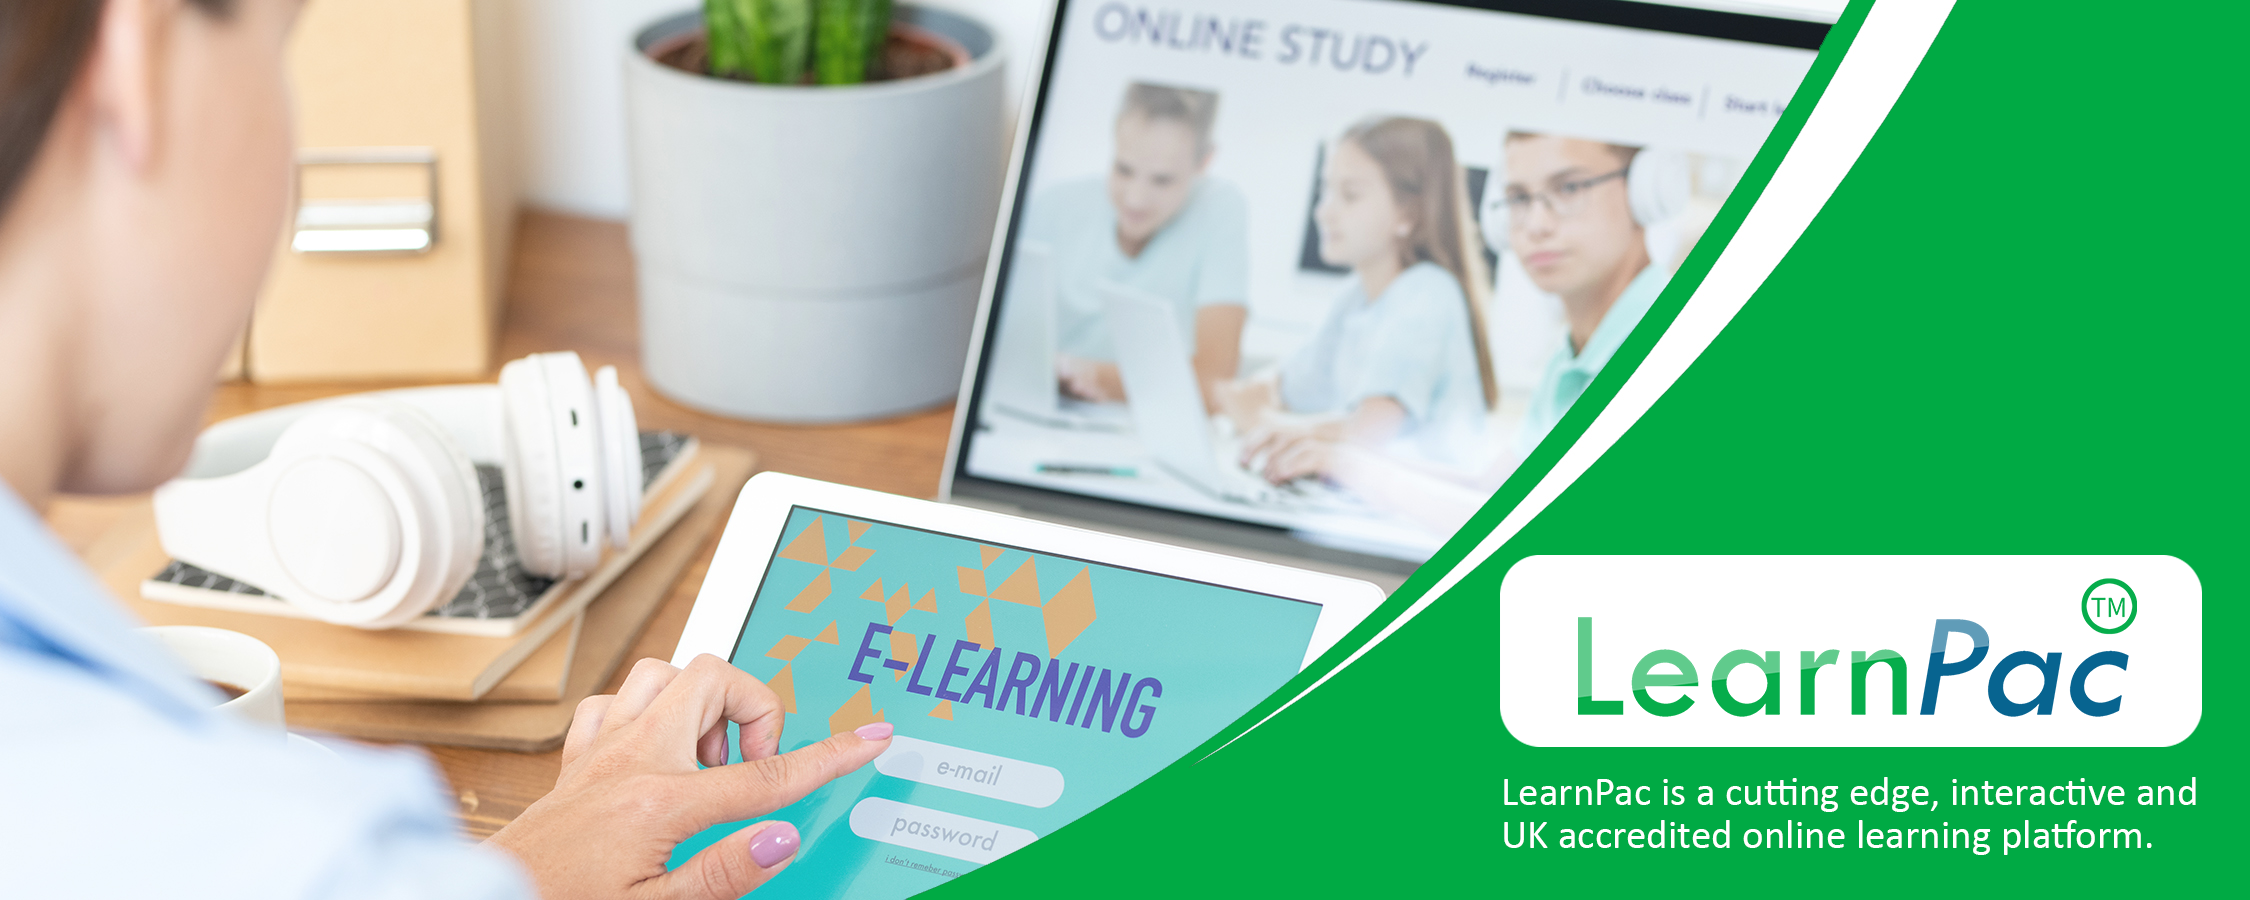 Body Language Basics Training- Online Learning Courses - E-Learning Courses - LearnPac Systems UK -